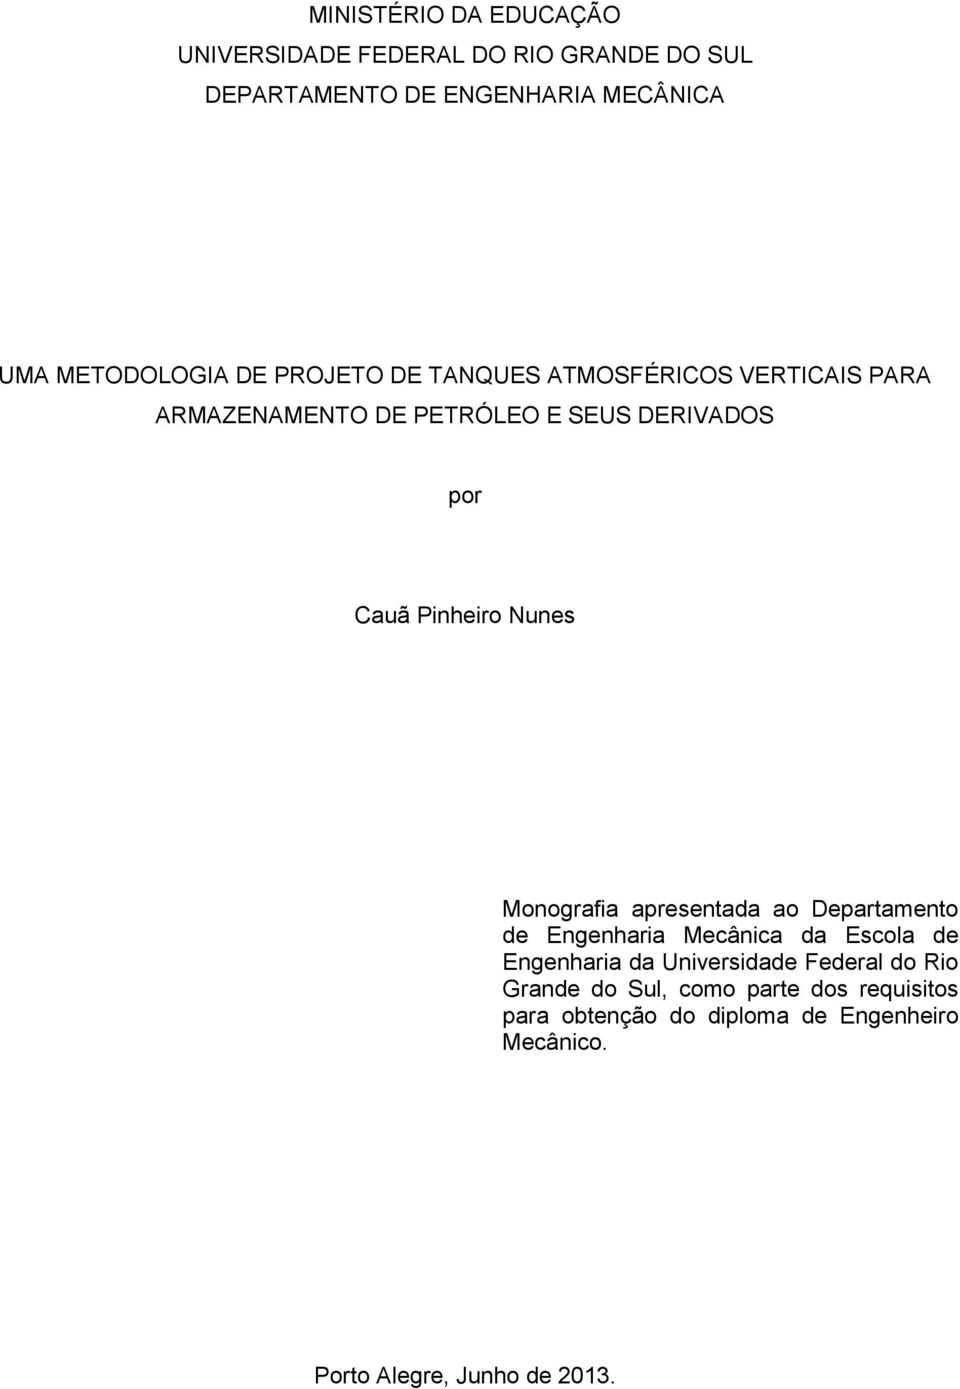 Monografia apresentada ao Departamento de Engenharia Mecânica da Escola de Engenharia da Universidade Federal do Rio